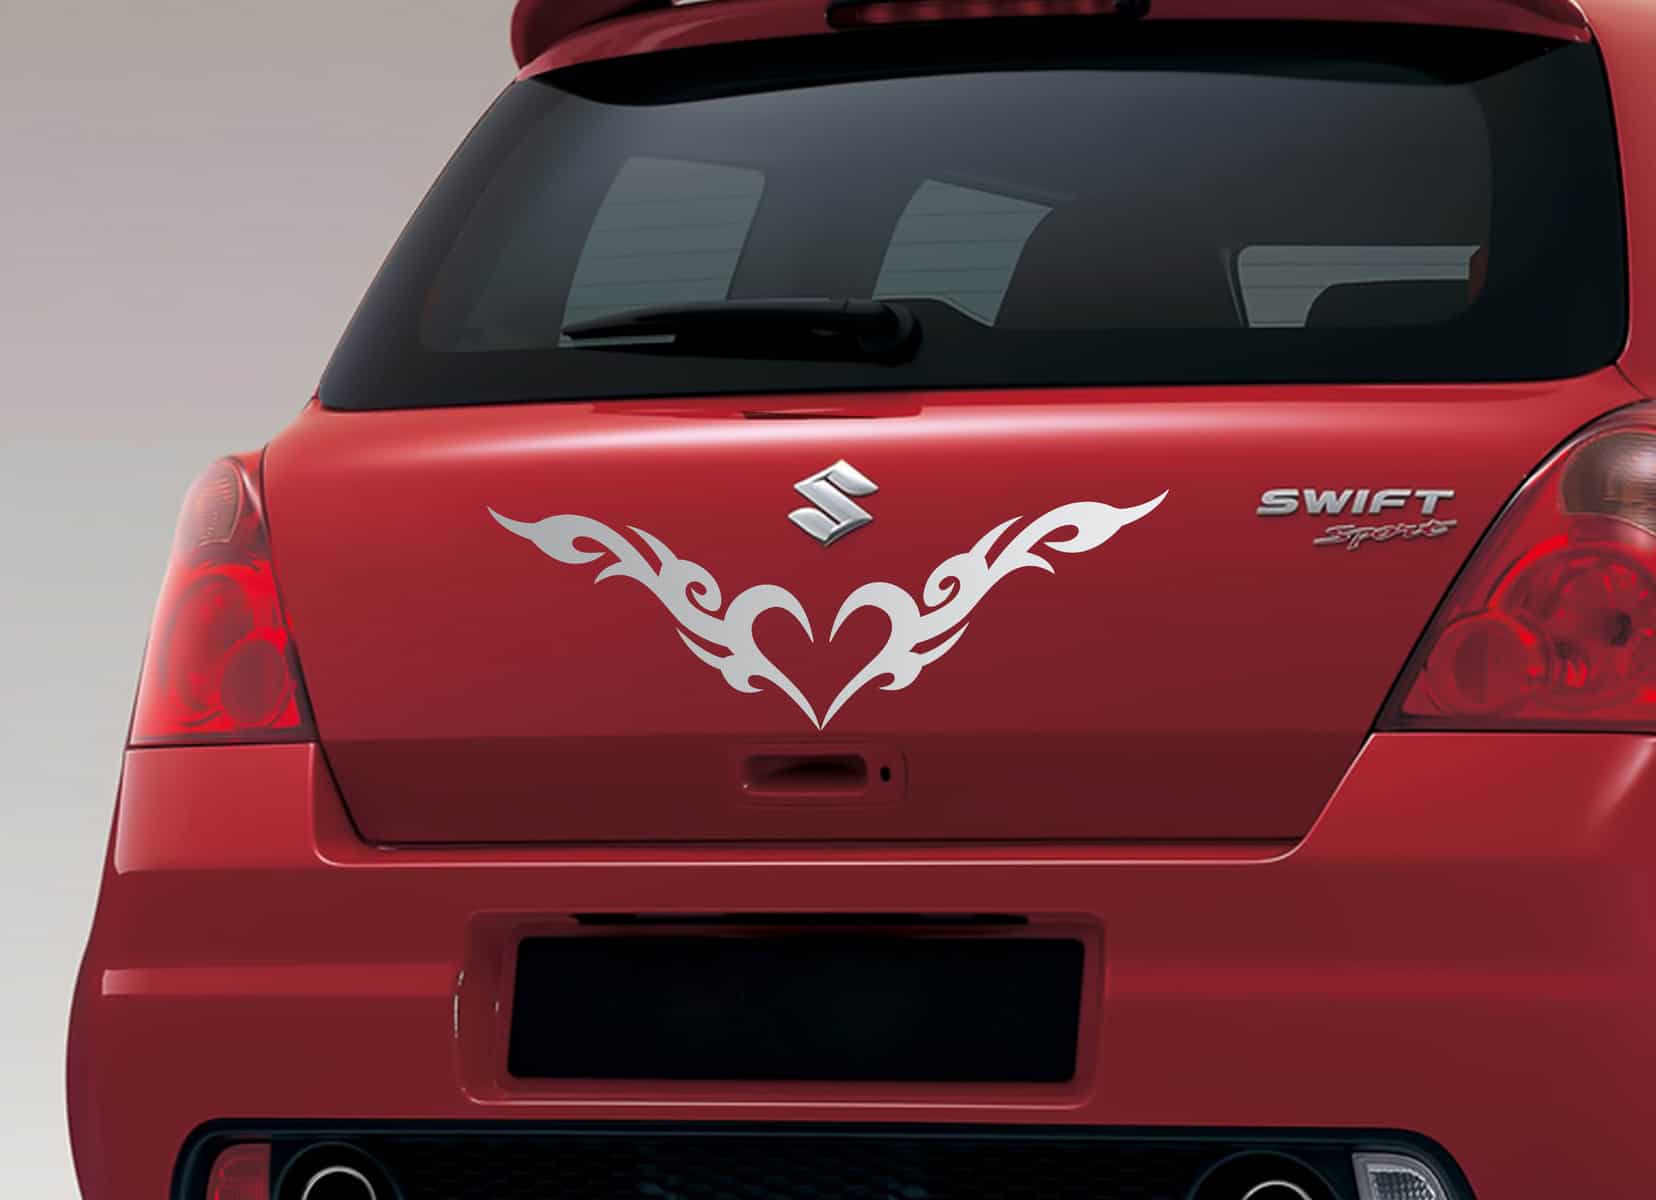 Heart of Fire Car Sticker – WallDesign